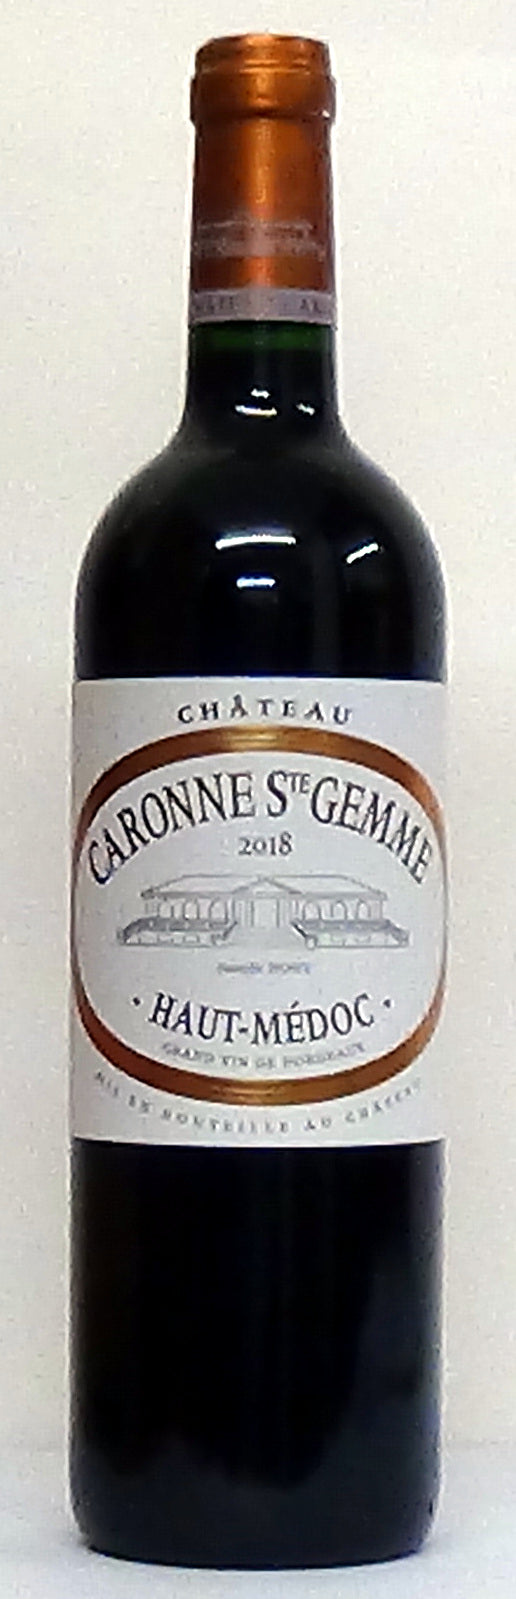 Chateau Caronne Ste Gemme Haut Medoc Bordeaux - Bordeaux Wines - Wines